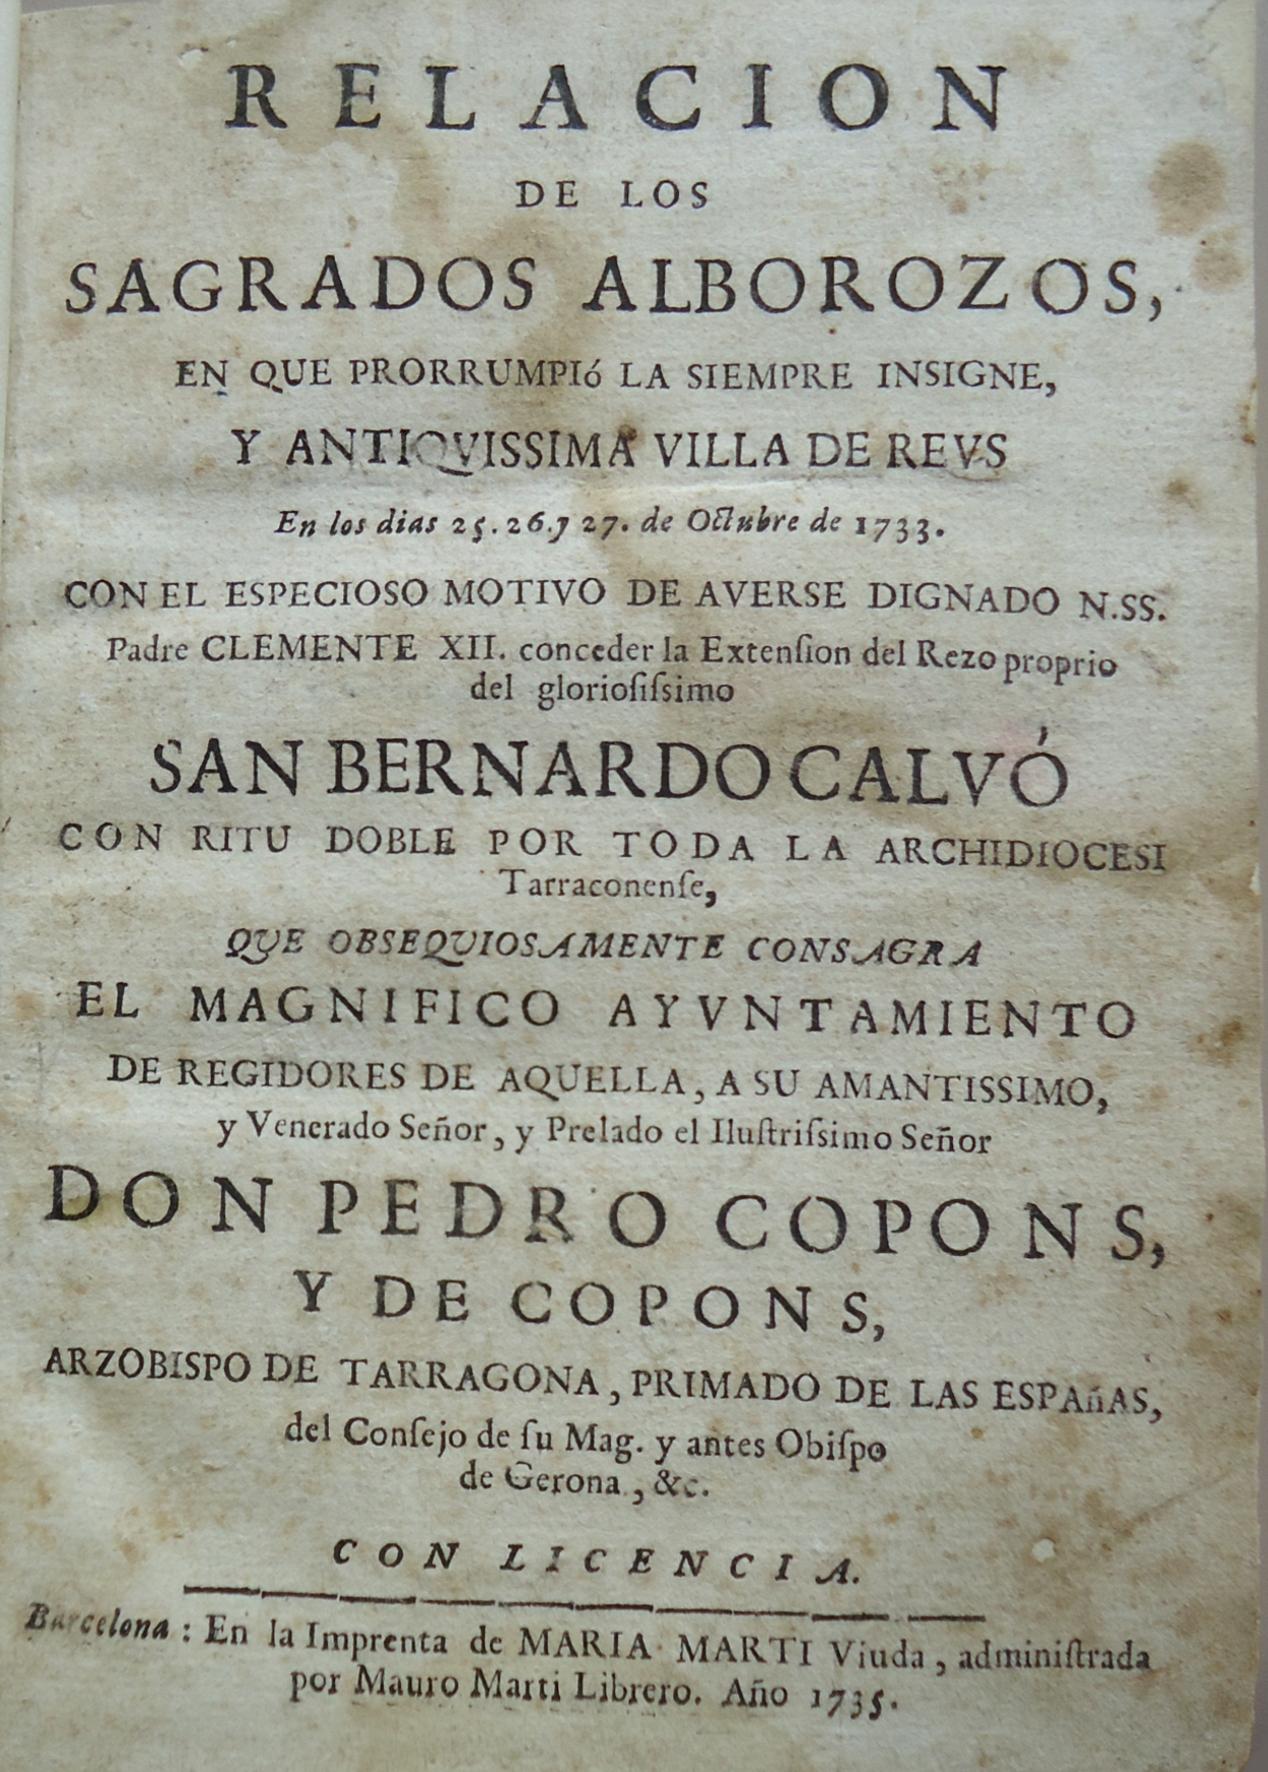 La solemnitat de 1733 en honor a Sant Bernat Calbó